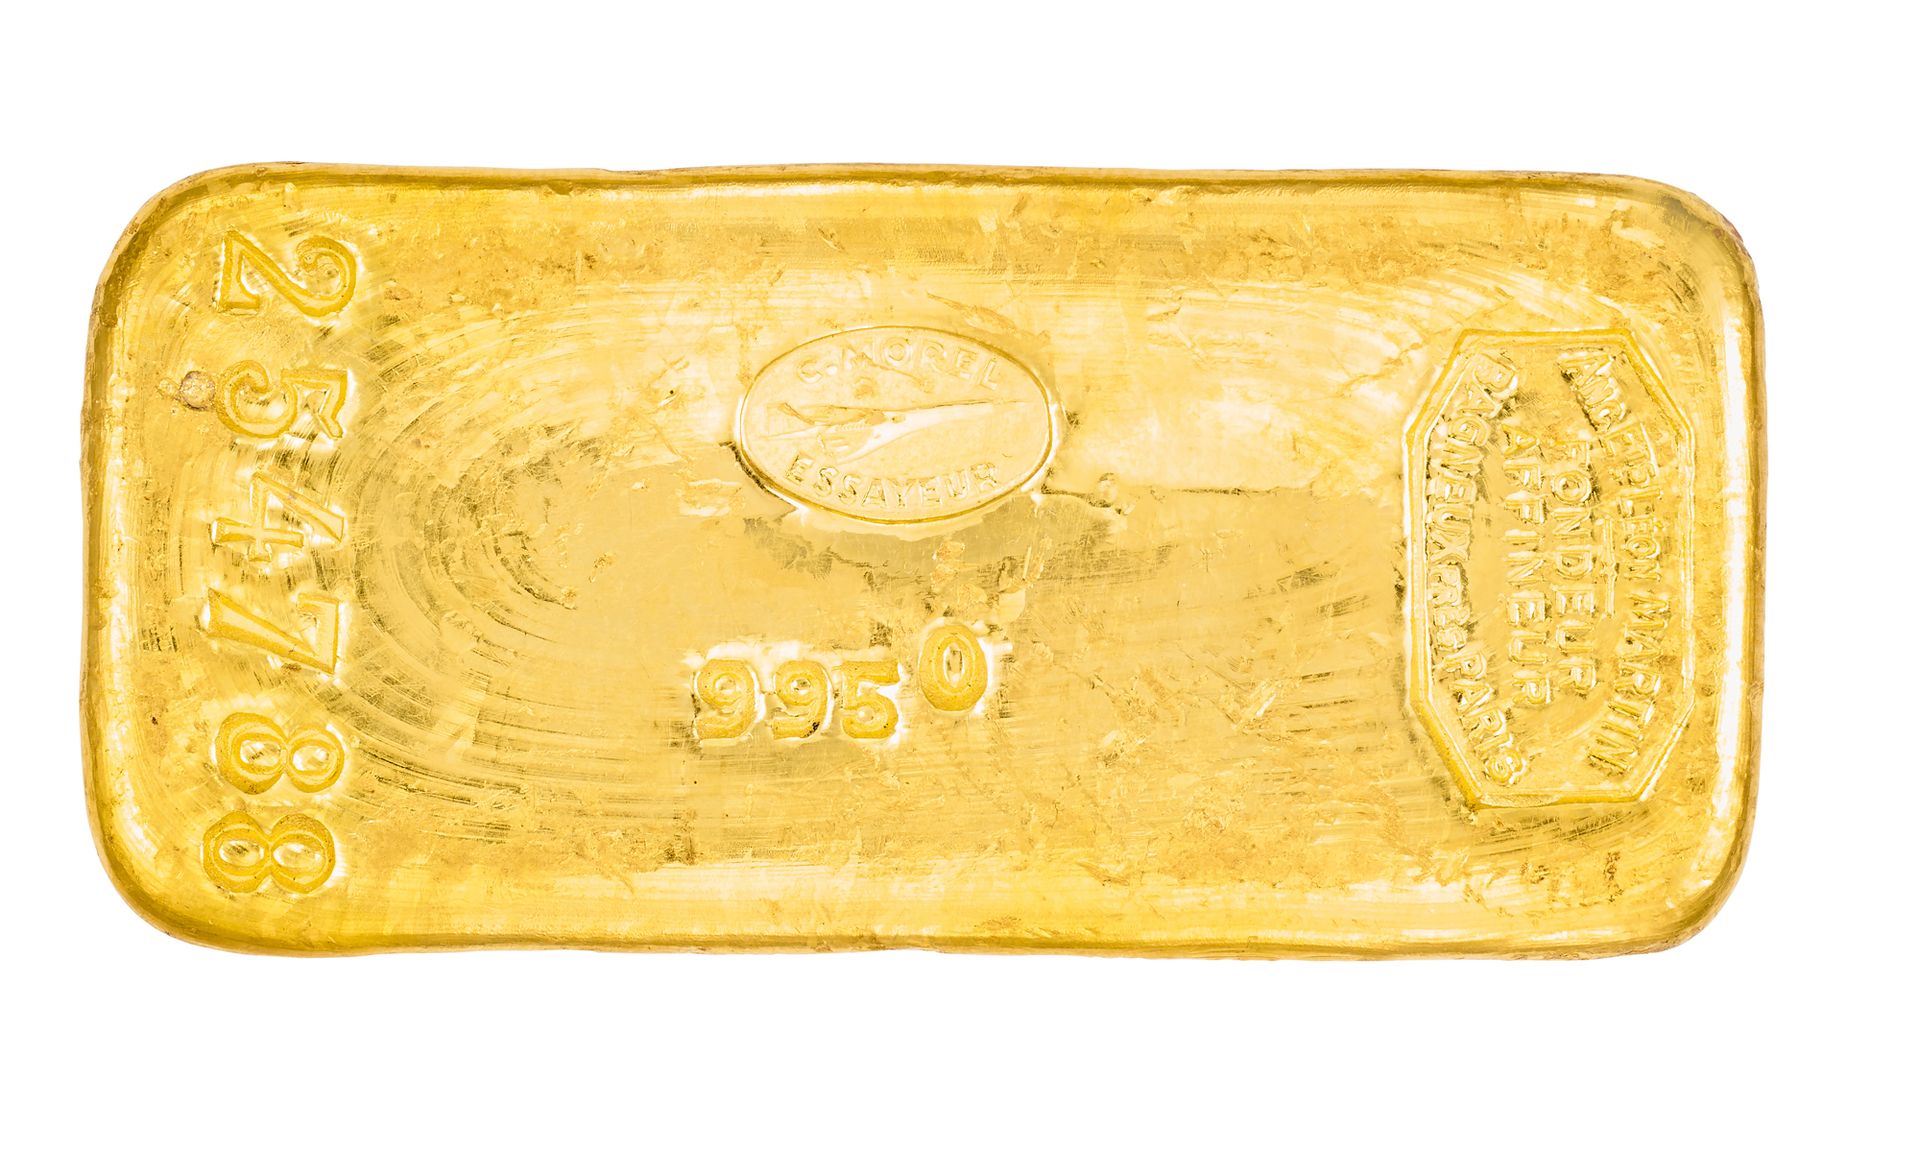 Lingot d'or Numéroté
Pesant 998,40 g d'or fin (24K- 995/1000)

Accompagné de son&hellip;